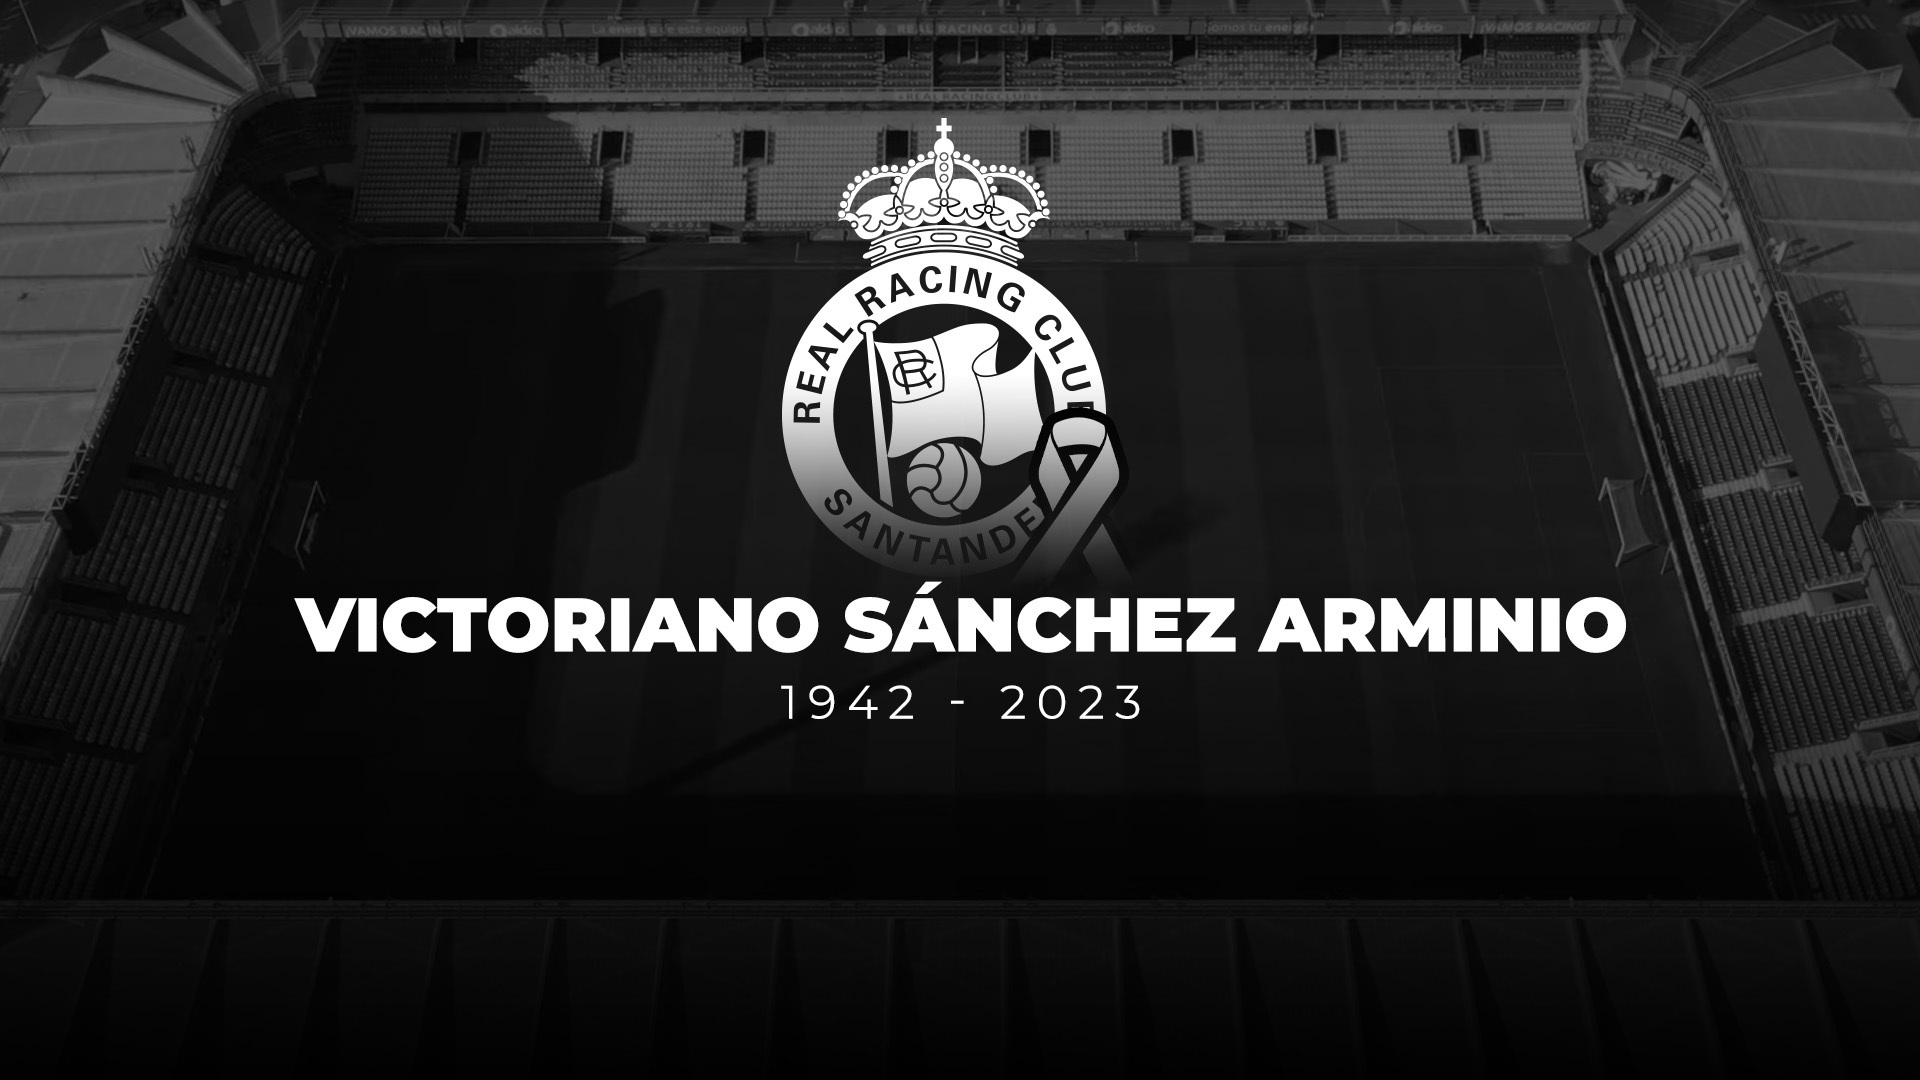 Minuto de silencio en memoria de Sánchez Arminio y saque de honor del ‘Racing de los bigotes’